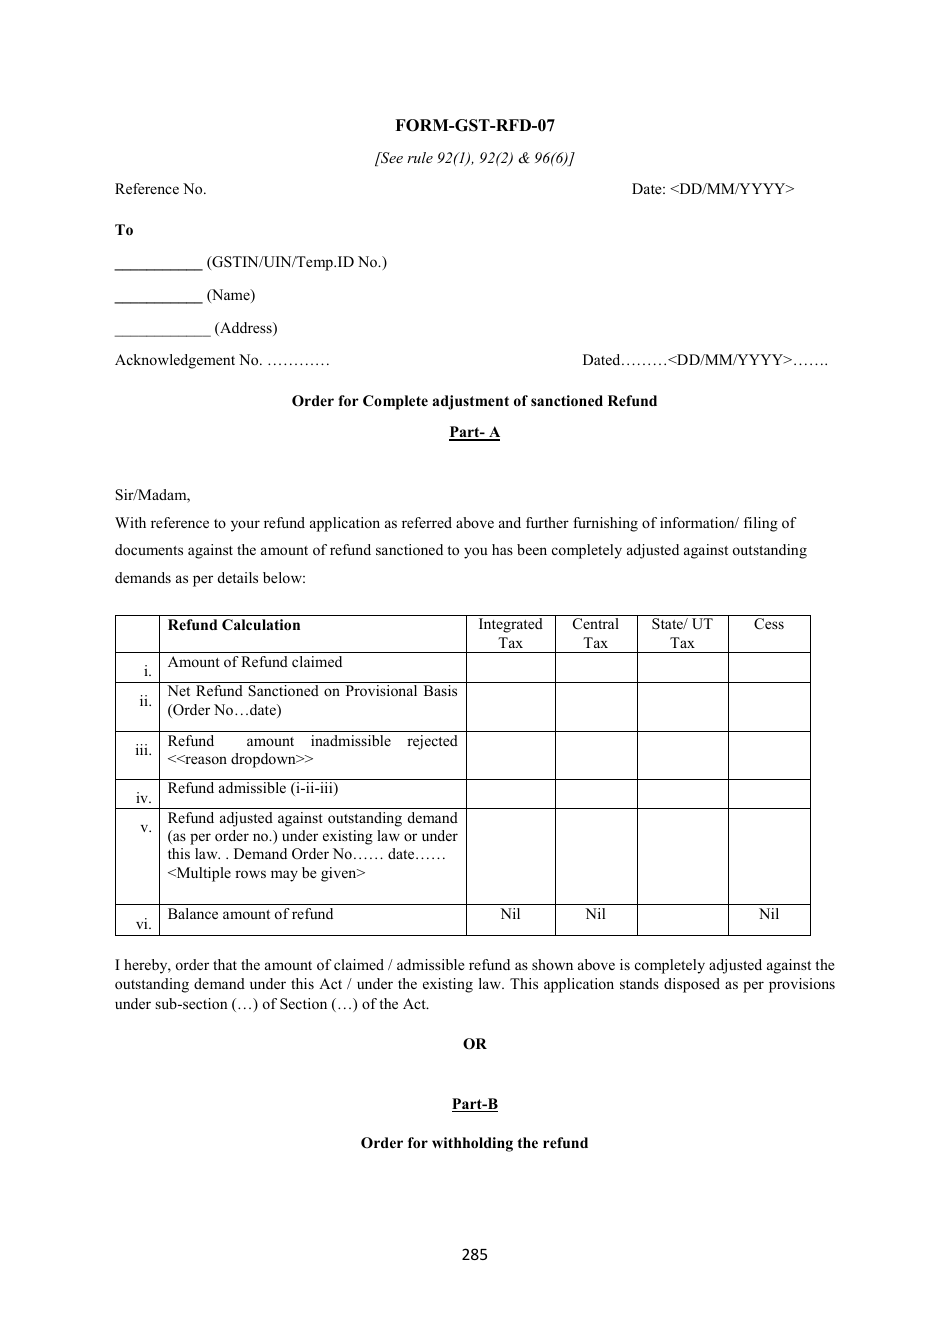 Form GST-RFD-07 Order for Complete Adjustment of Sanctioned Refund - Karnataka, India, Page 1